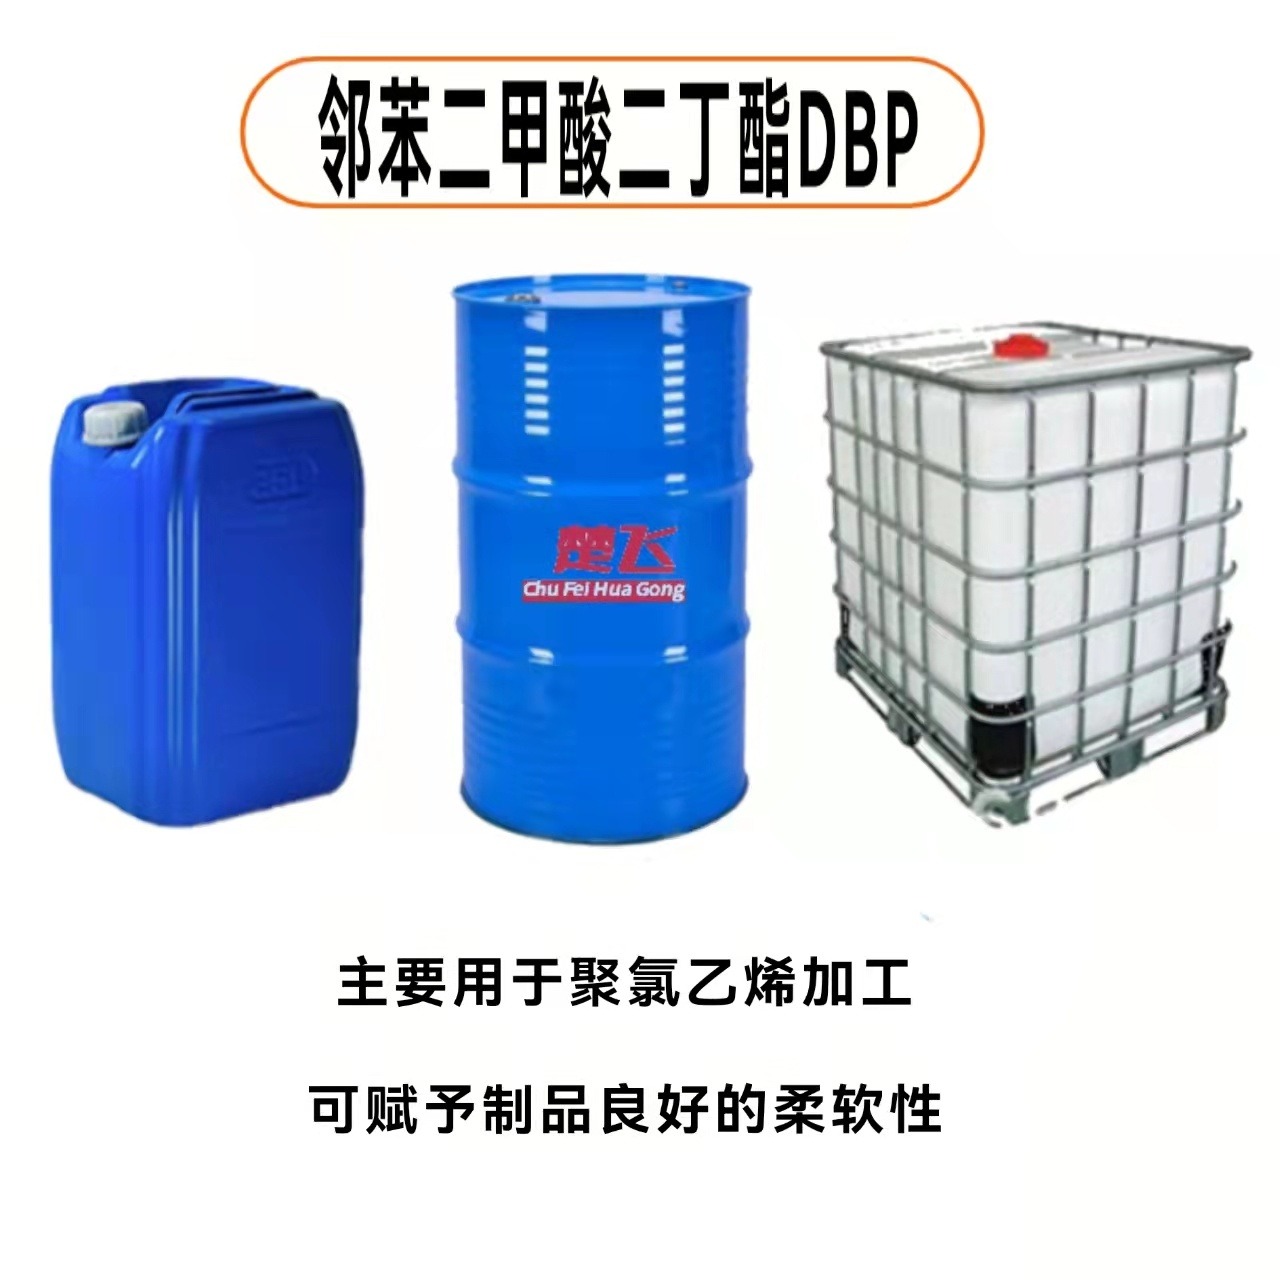 广州楚飞 现货供应 PVC增塑剂 二丁酯 DBP 通用型增塑剂图片